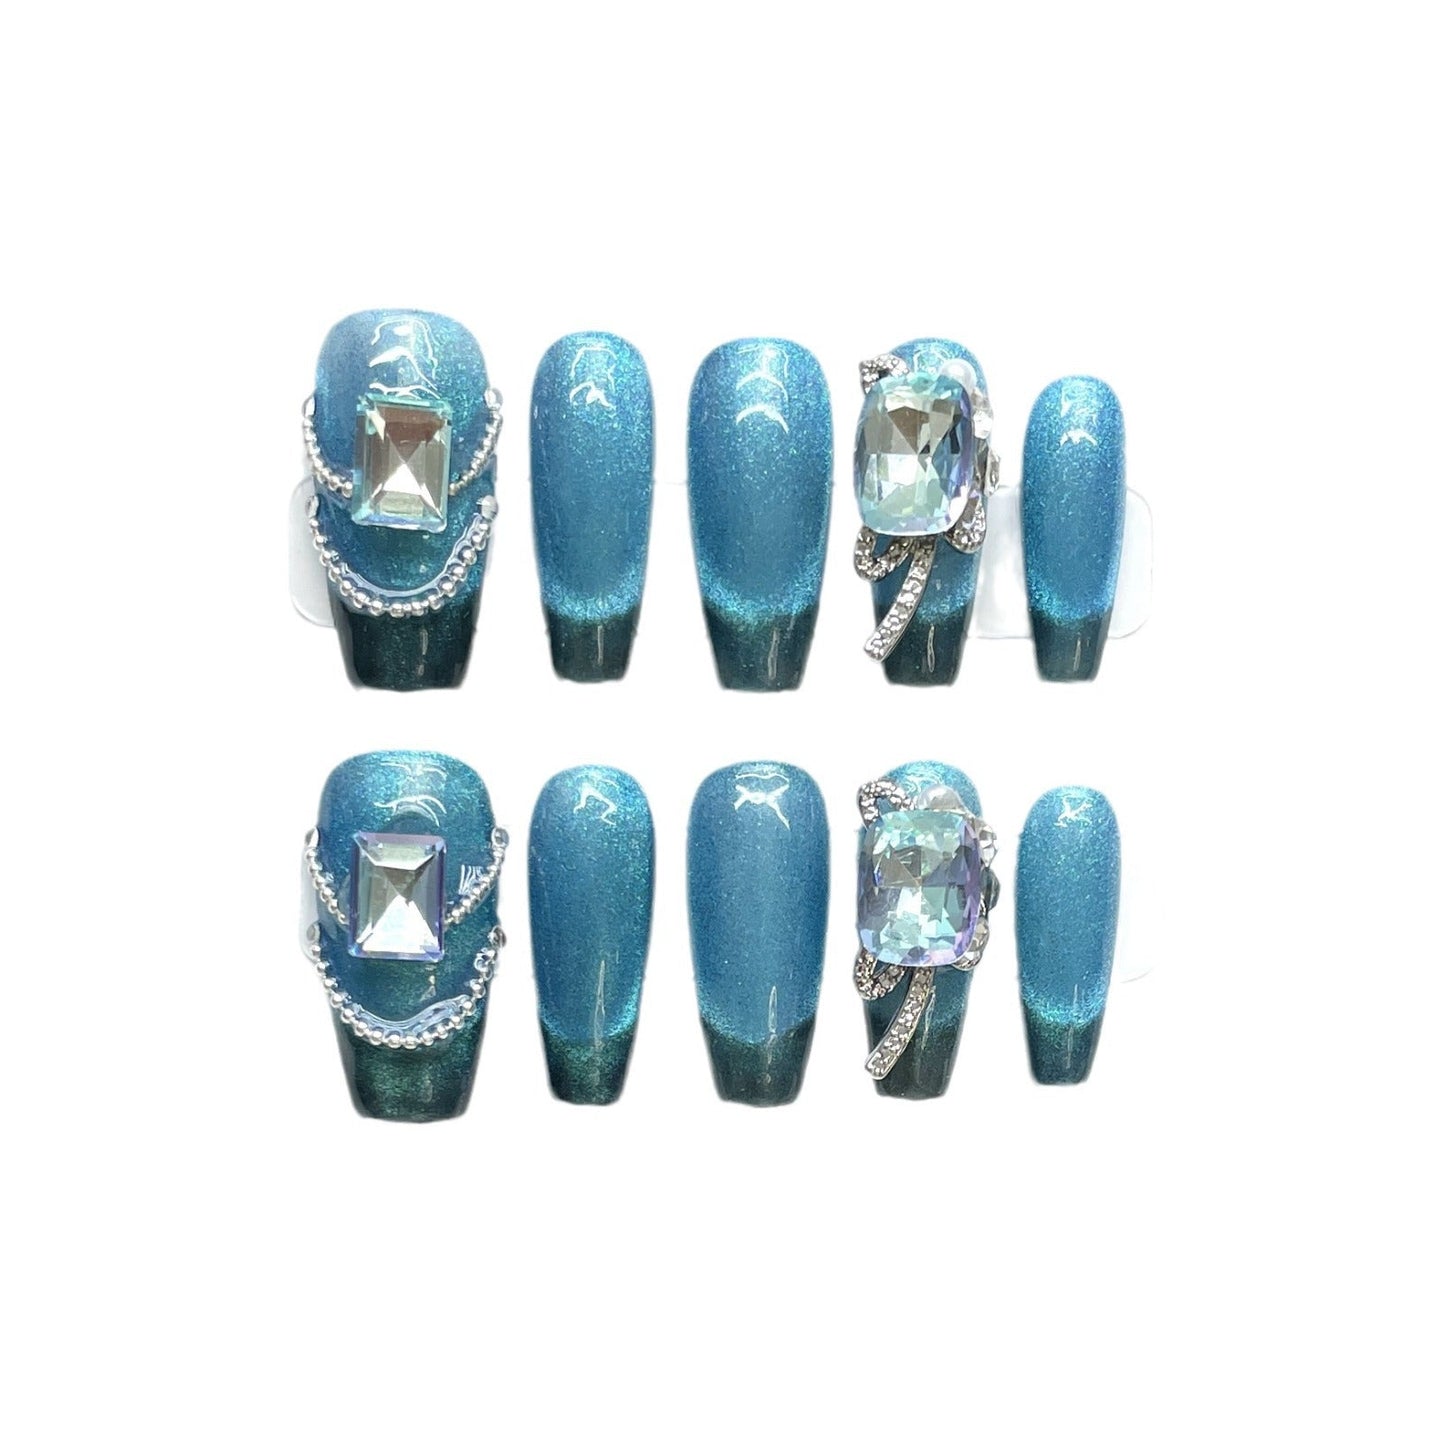 1364 Presse de style oeil de chat bleu sur les ongles 100% faux ongles faits à la main faux ongles bleus